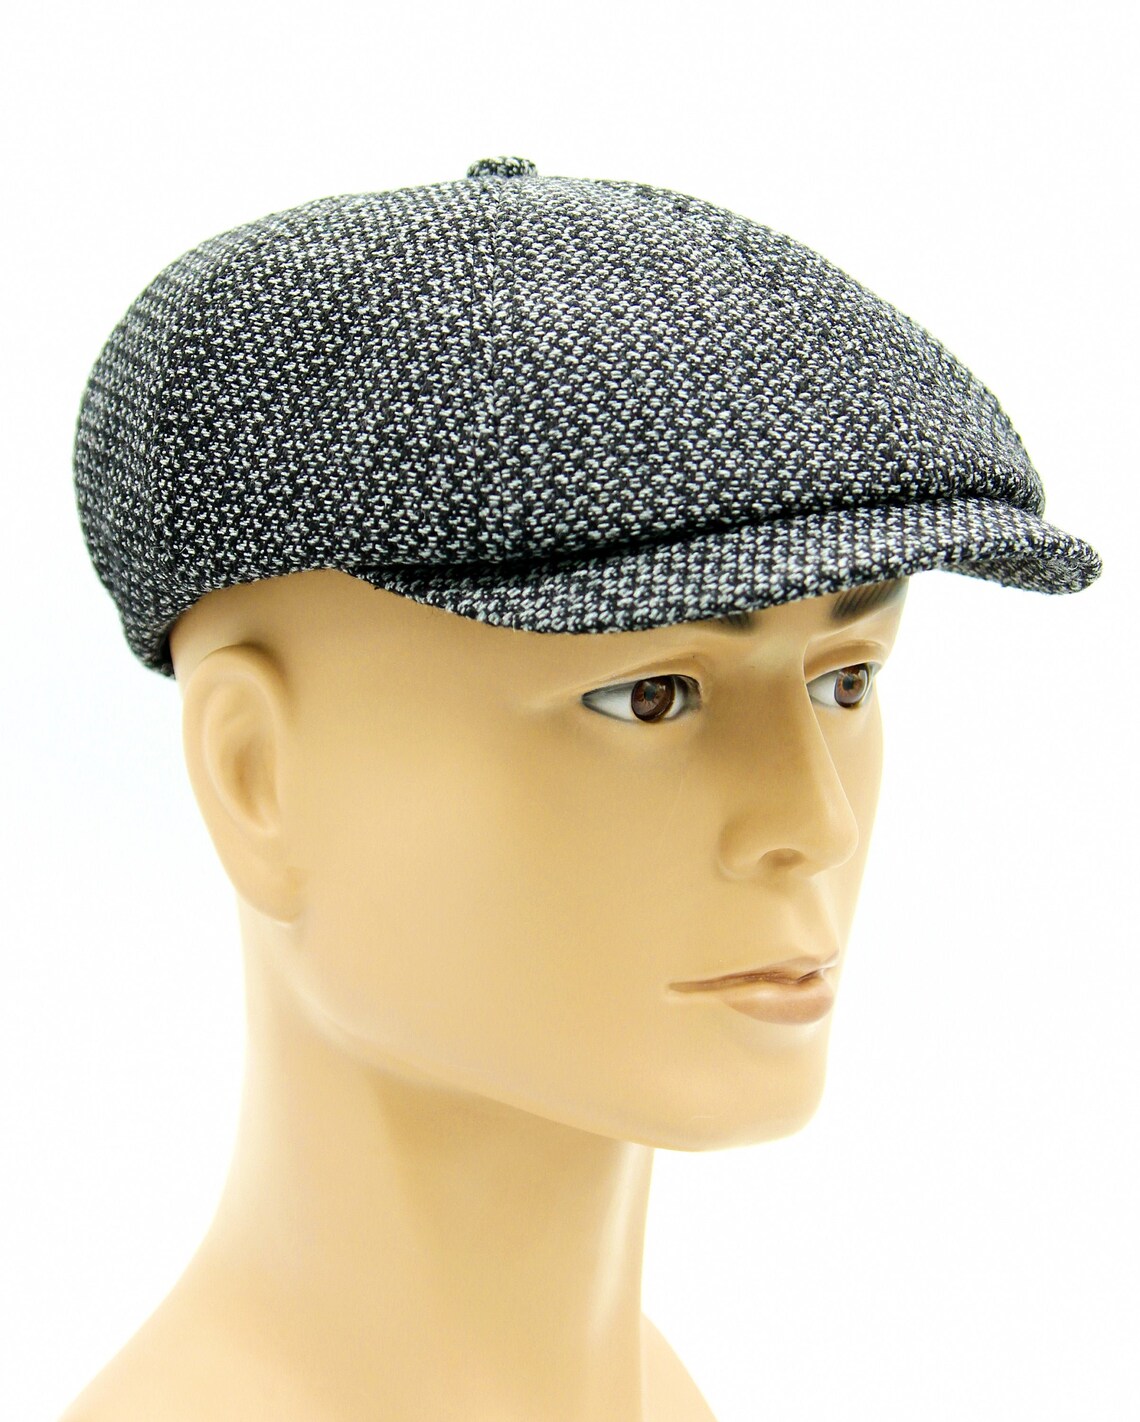 Men's newsboy slouchy hat | Etsy